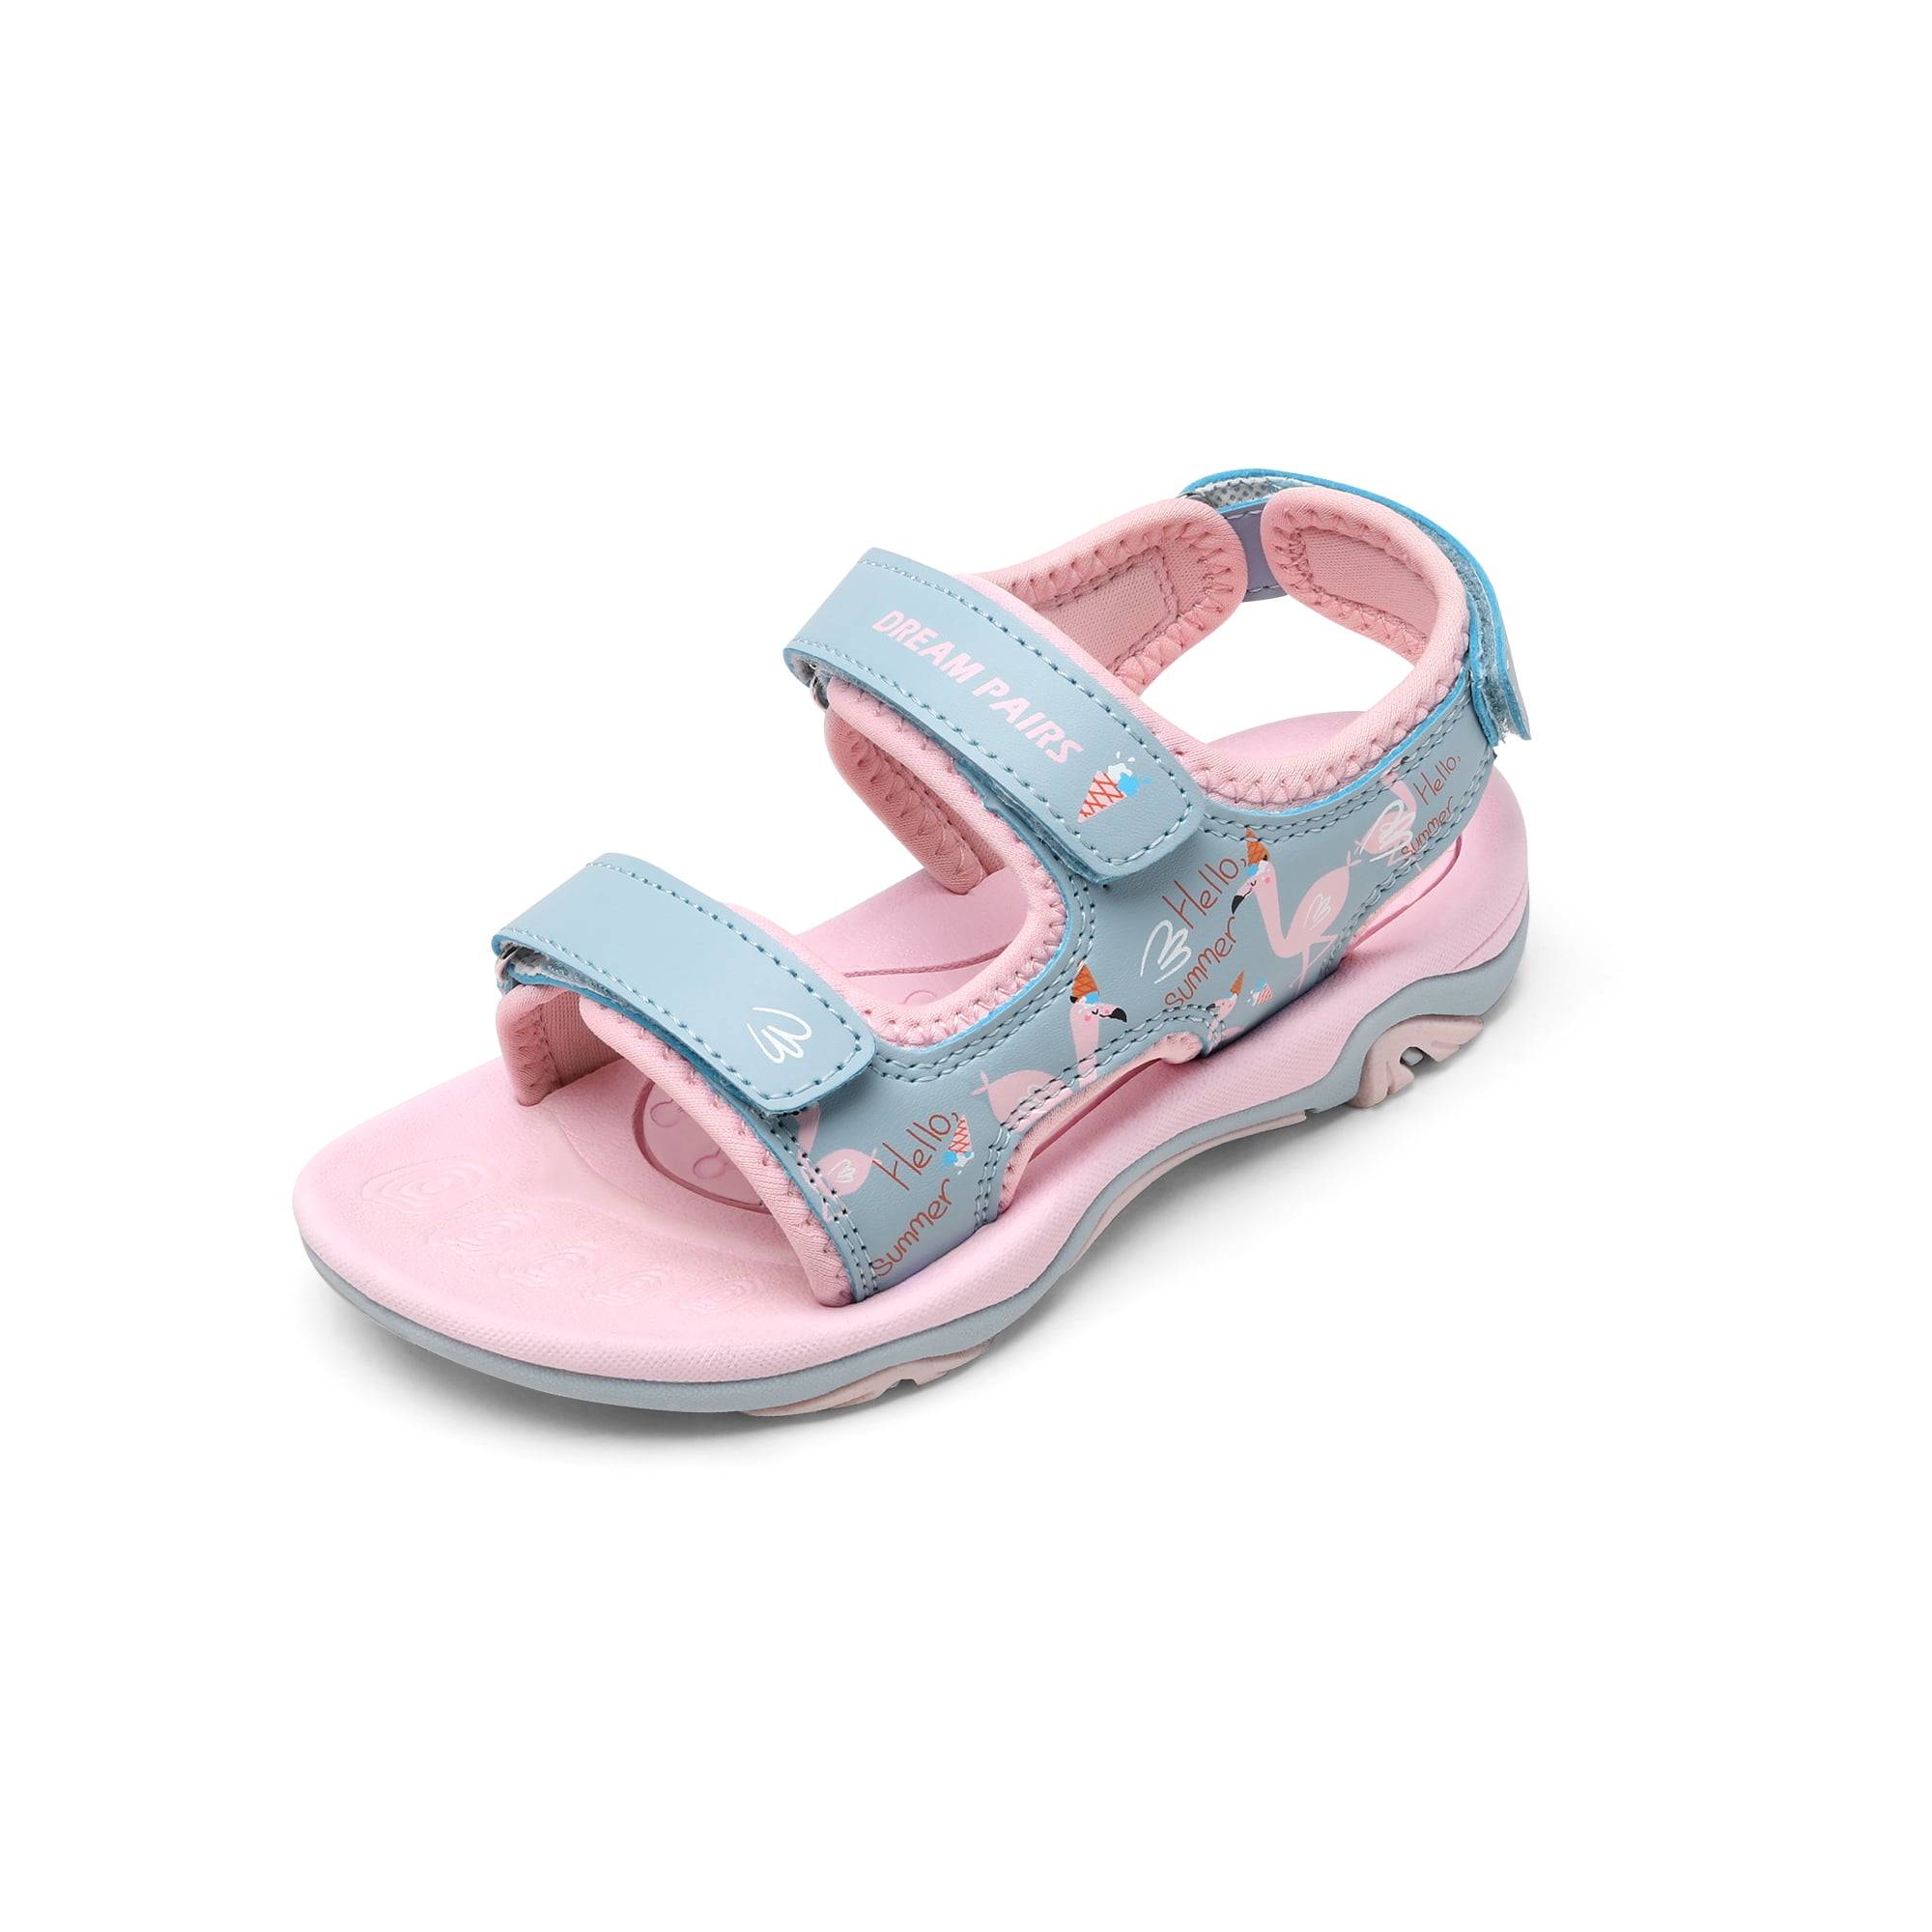 New girl's kids Fuchsia blink blink comfort casual open toe sandals summer 